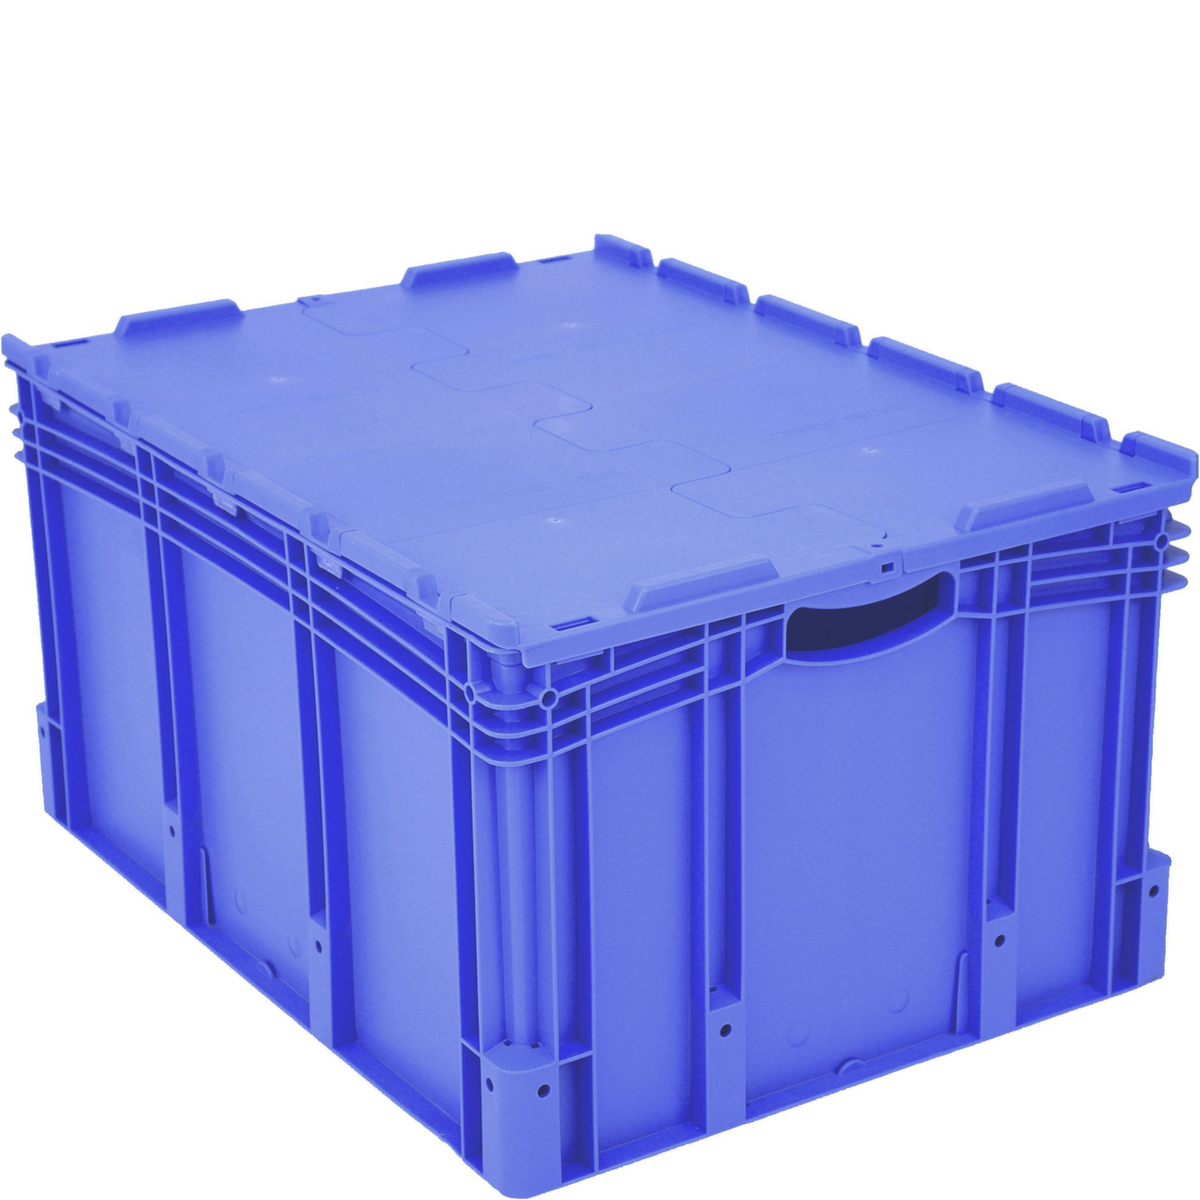 Großvolumiger Euronorm-Stapelbehälter, blau, Inhalt 170 l, Scharnierdeckel Standard 2 ZOOM